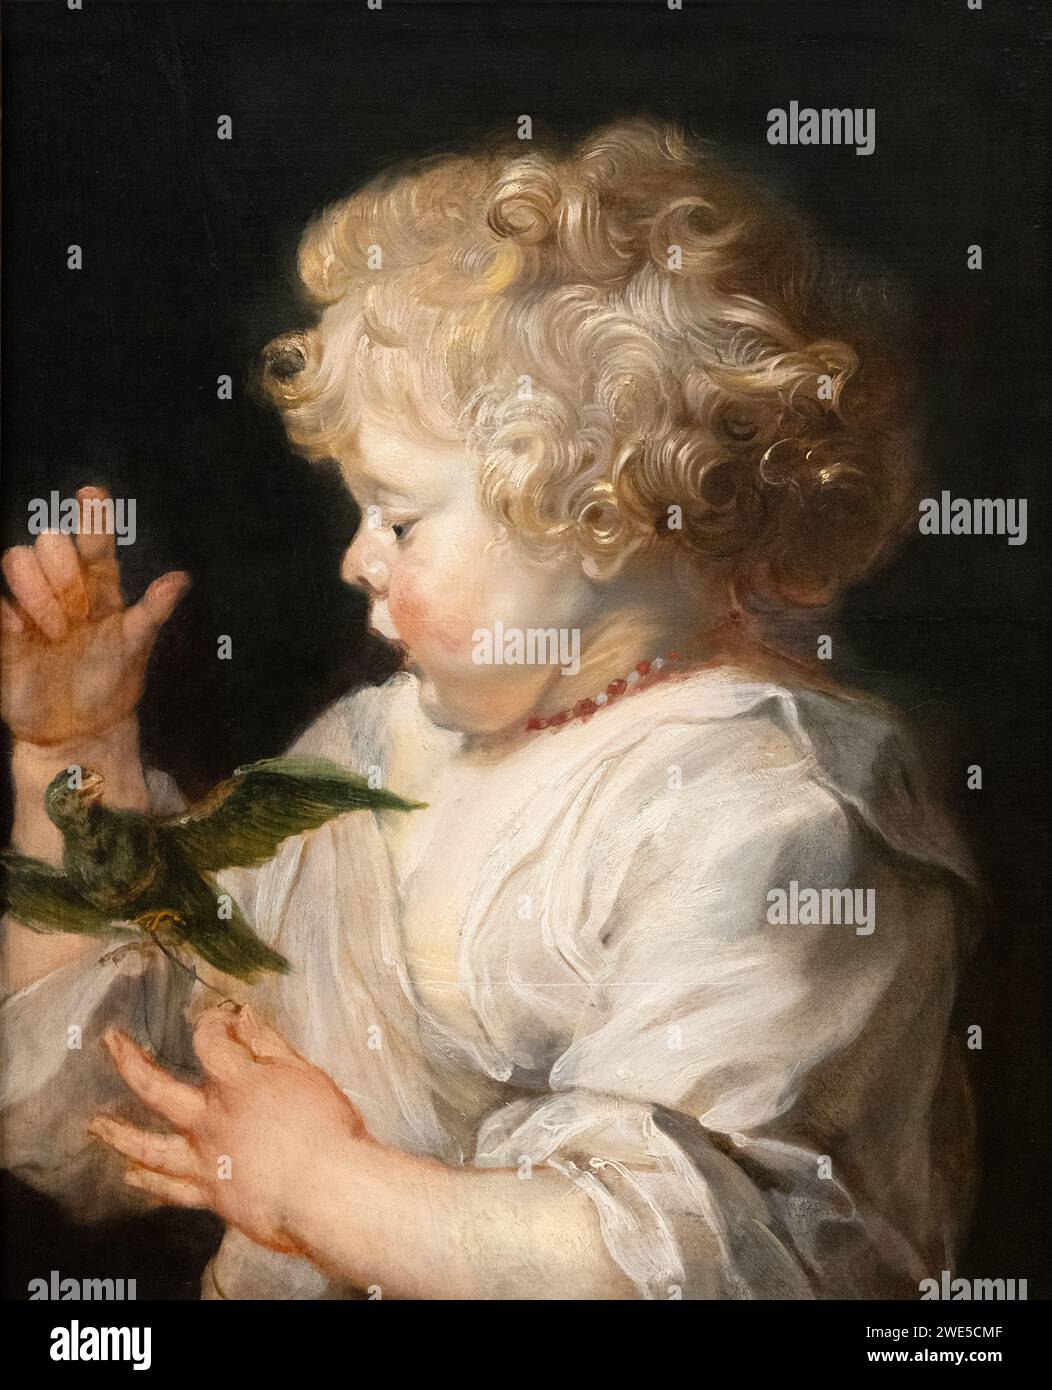 Peter Paul Rubens Gemälde 'das Kind mit dem Vogel' um 1614 und nach 1625. Eines der wenigen Gemälde, das Rubens von Kindern machte. Barockmalerei der 1600er Jahre. Stockfoto